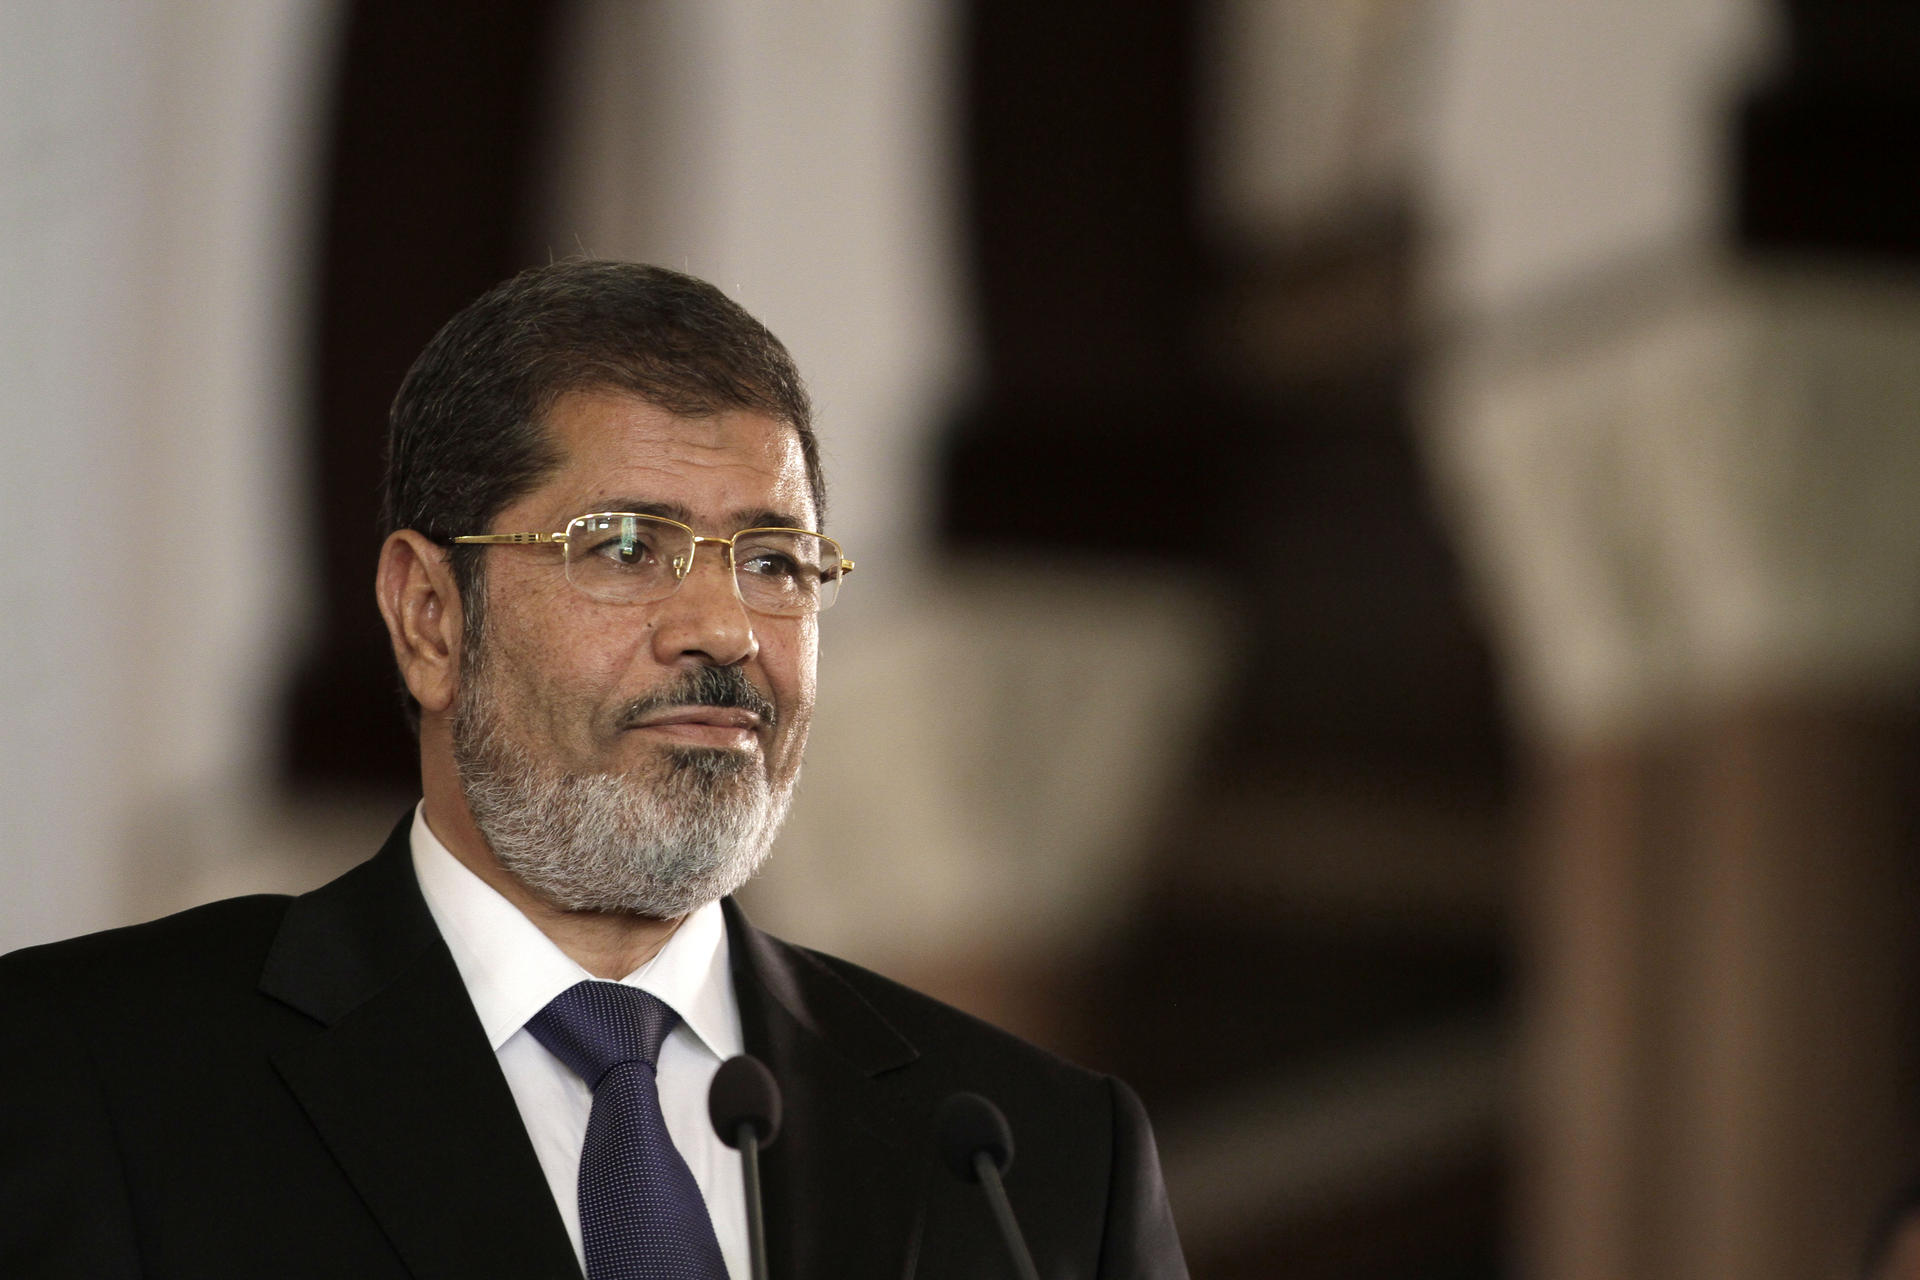 Mohammed Mursi